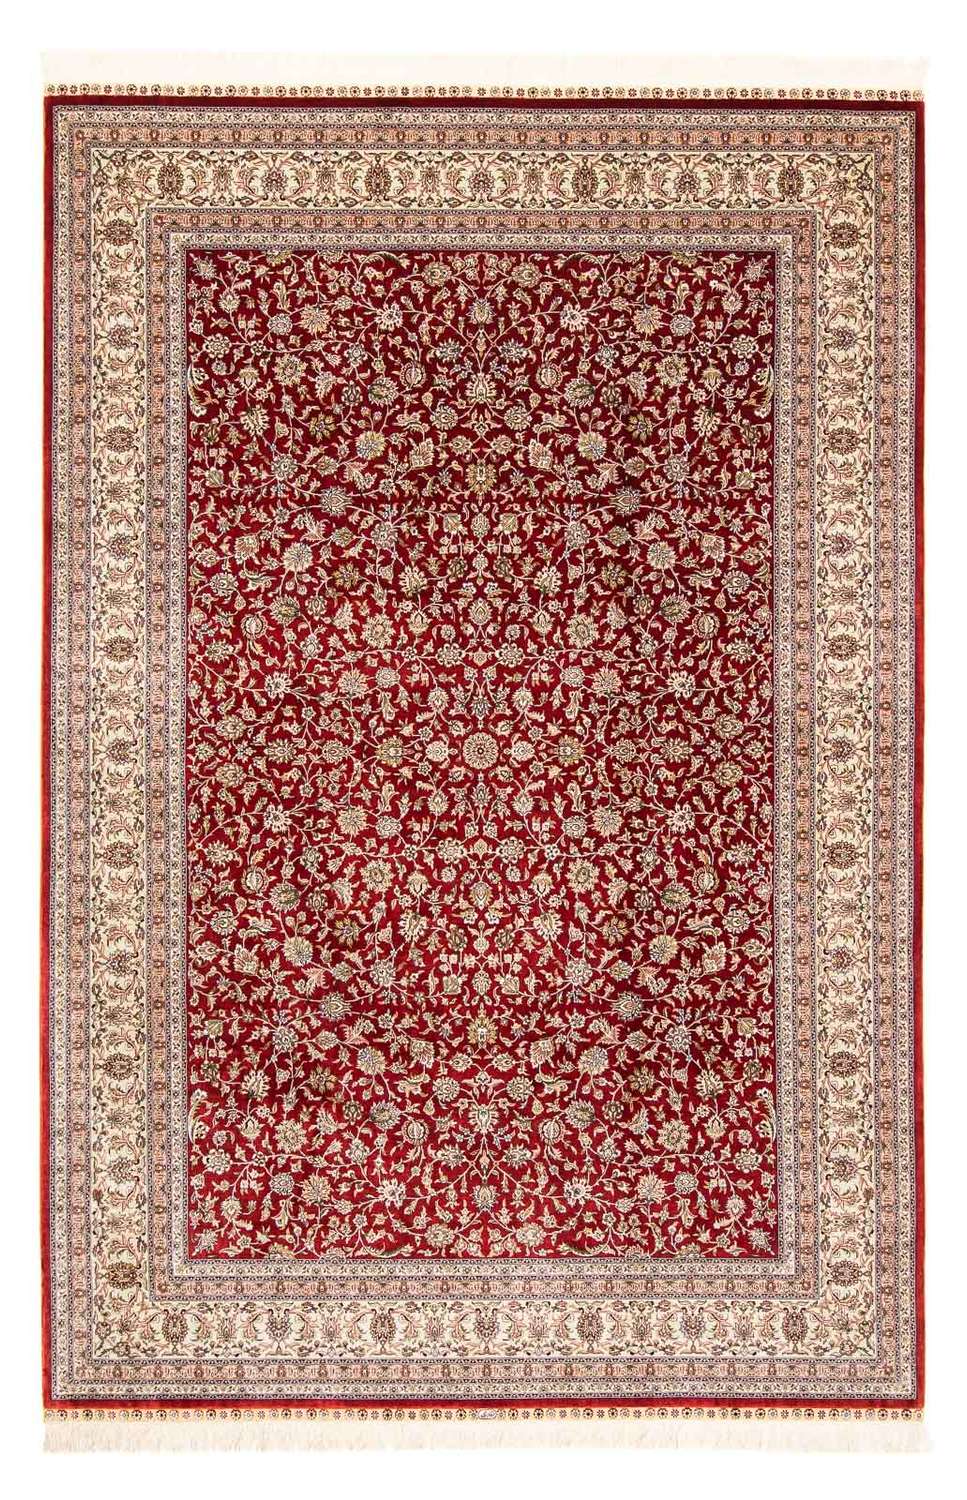 Orientální koberec - Hereke - 276 x 185 cm - tmavě červená